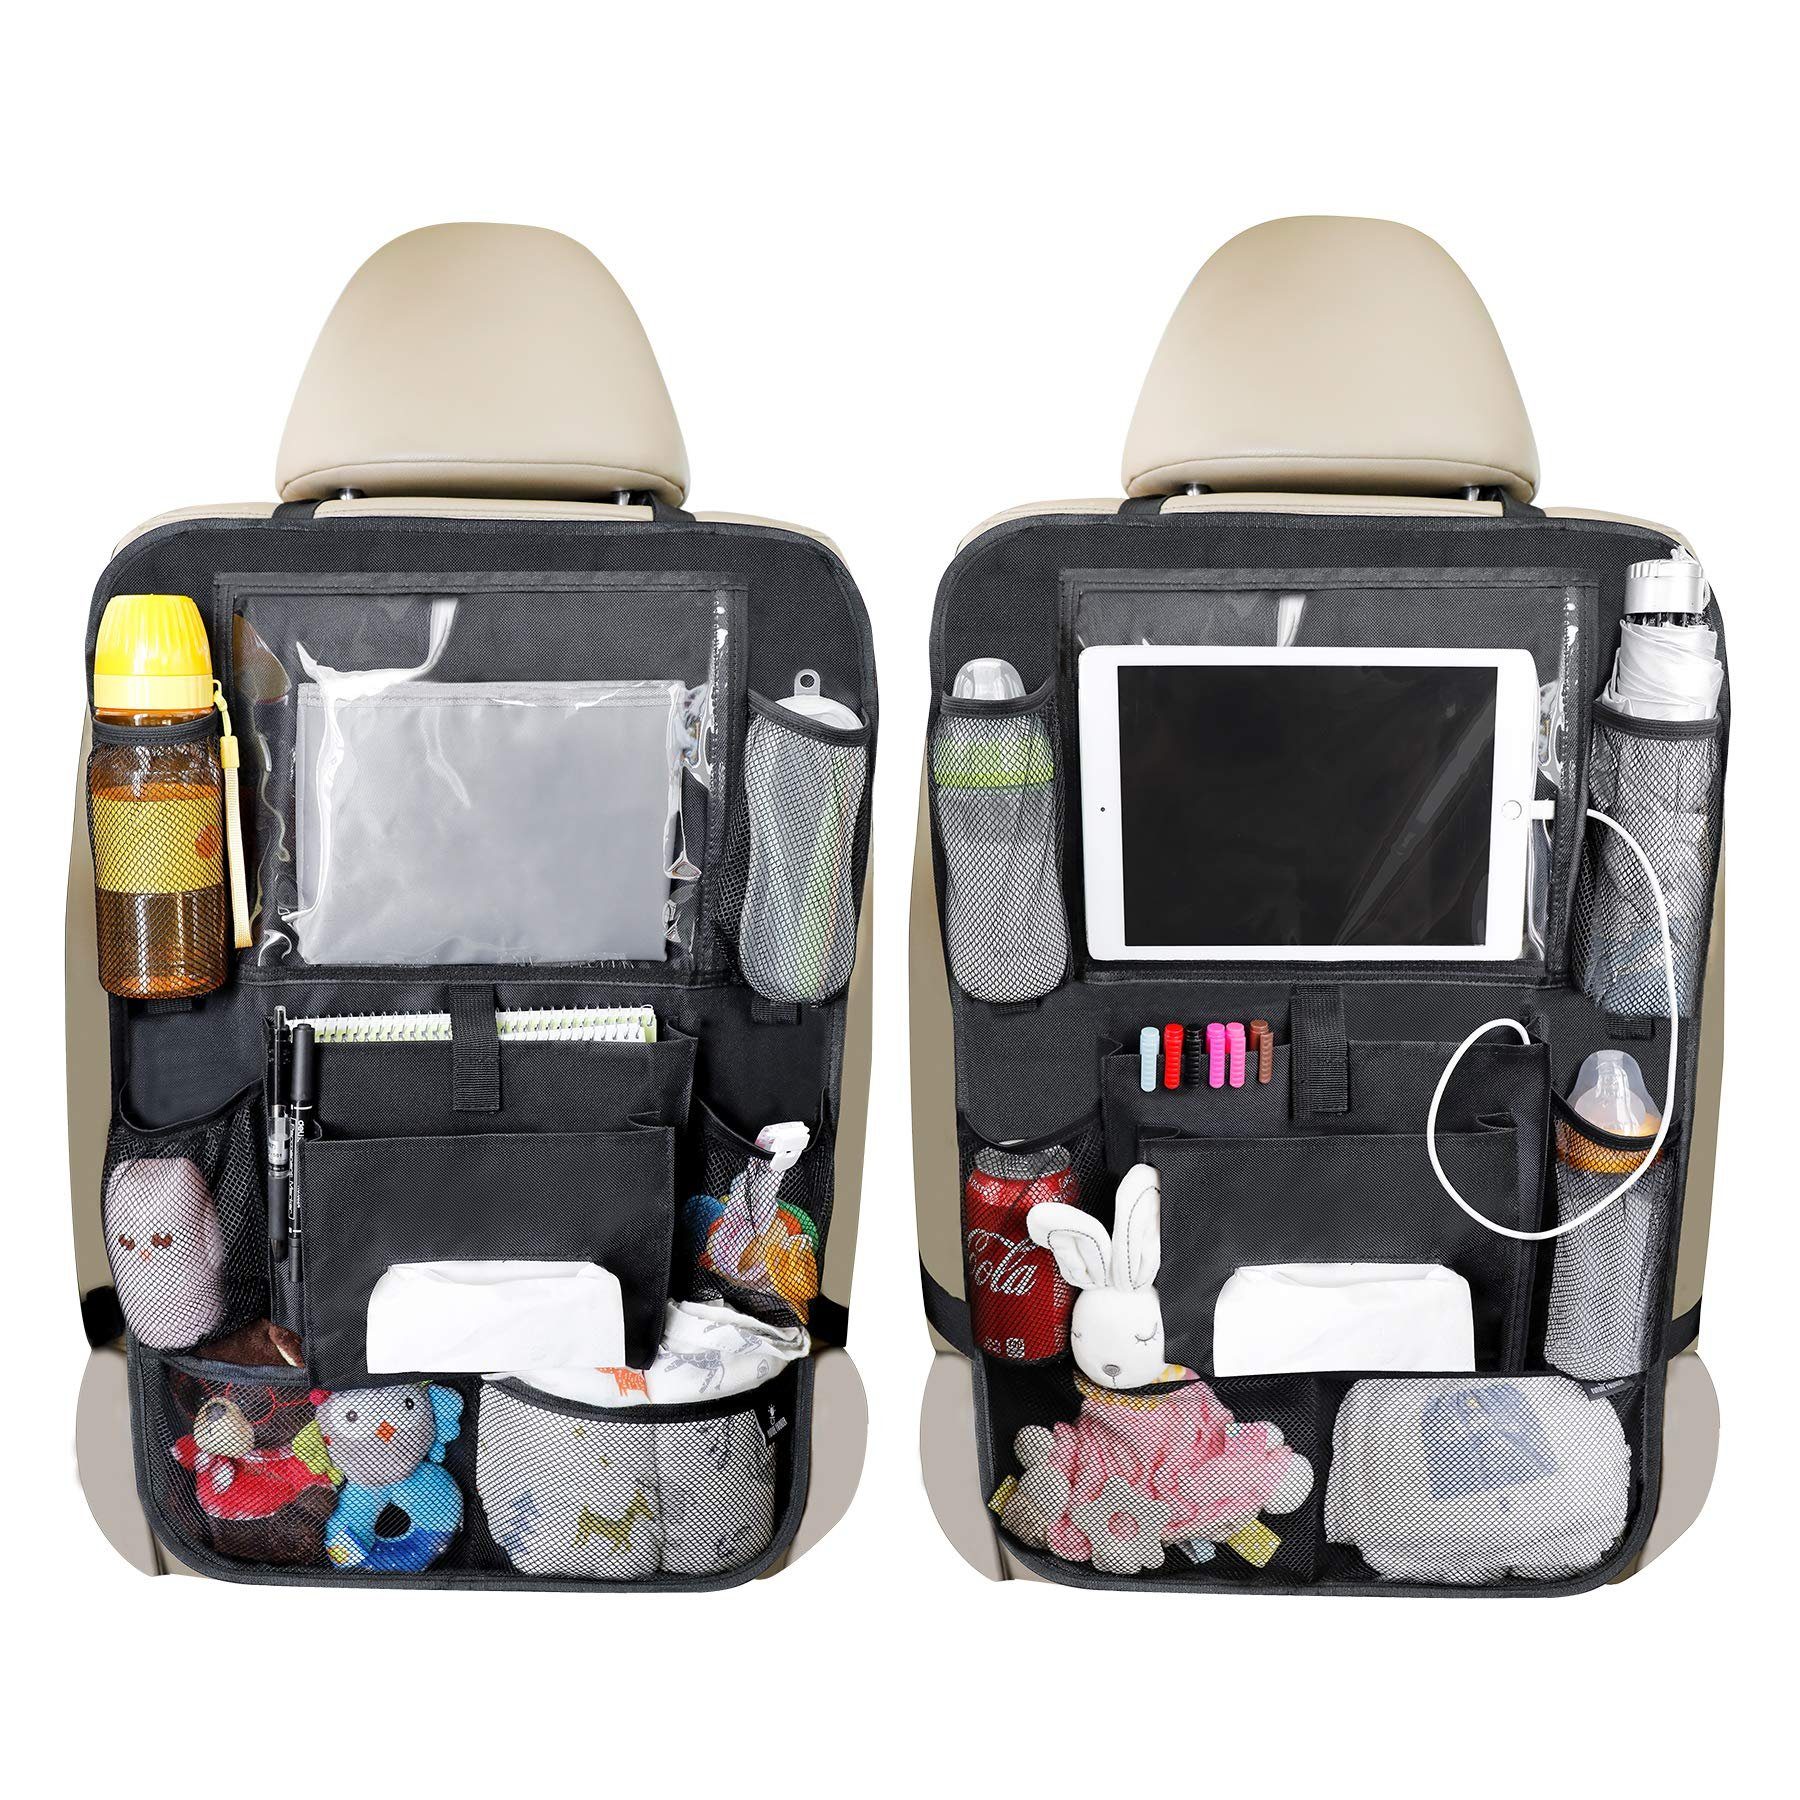 Auto Rückenlehnenschutz KALINZMA Premium Rücksitz Organizer für Kinder Wasserdicht 1 Stück Trittschutz/Kick-Matten-Schutz für Kinderfüße Autositzschoner Trinkhalterung iPad-/ Tablet-Fach 